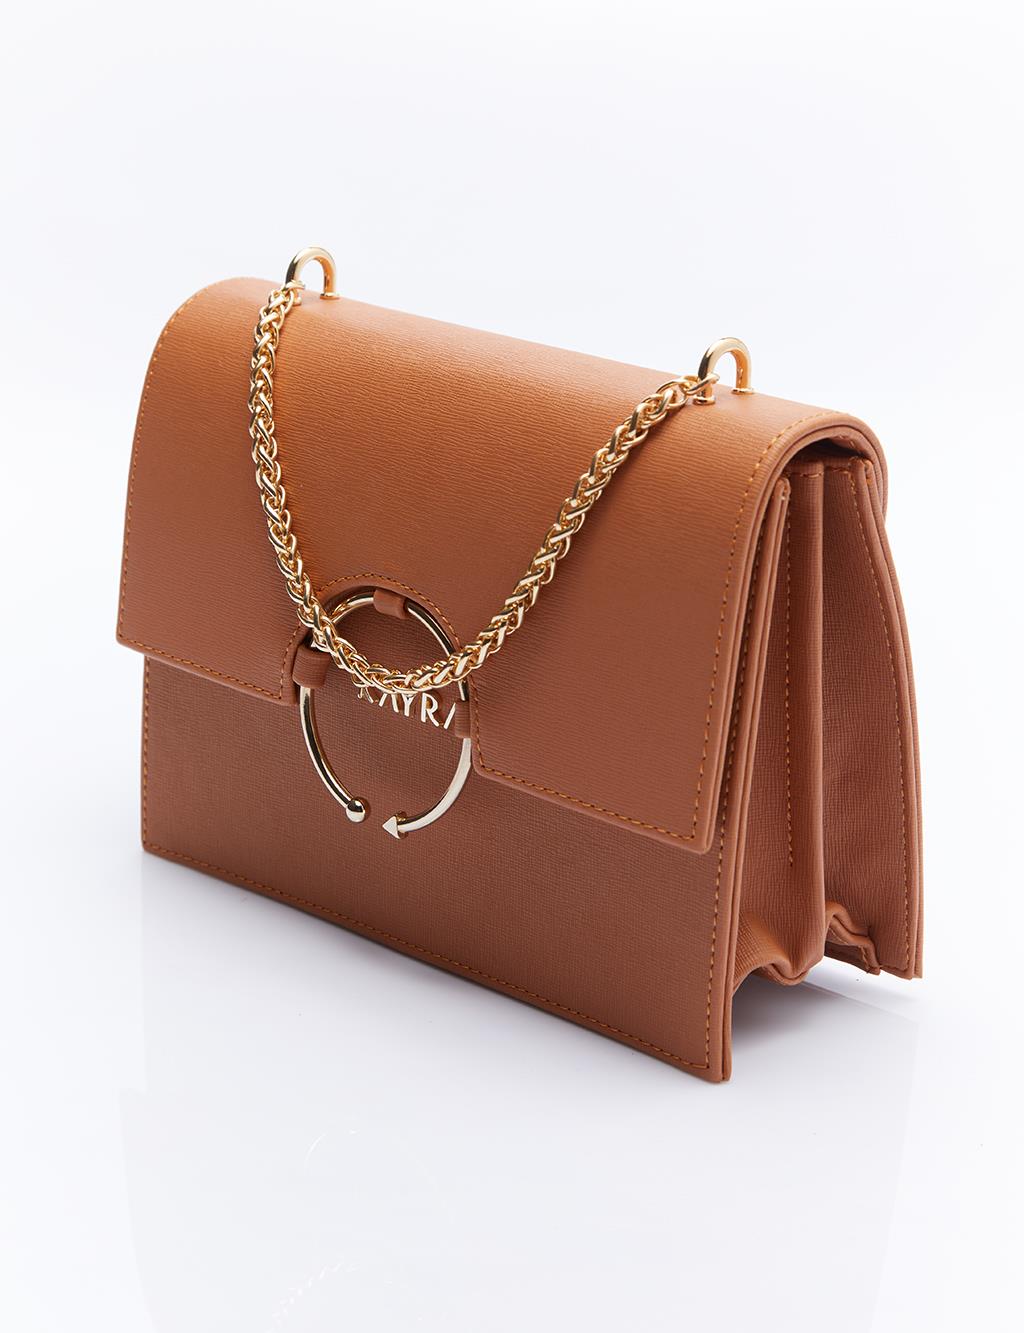 Дизайнерская сумка с ручкой-цепочкой, коричневая Kayra yavi taba cilt babet ayakkabı